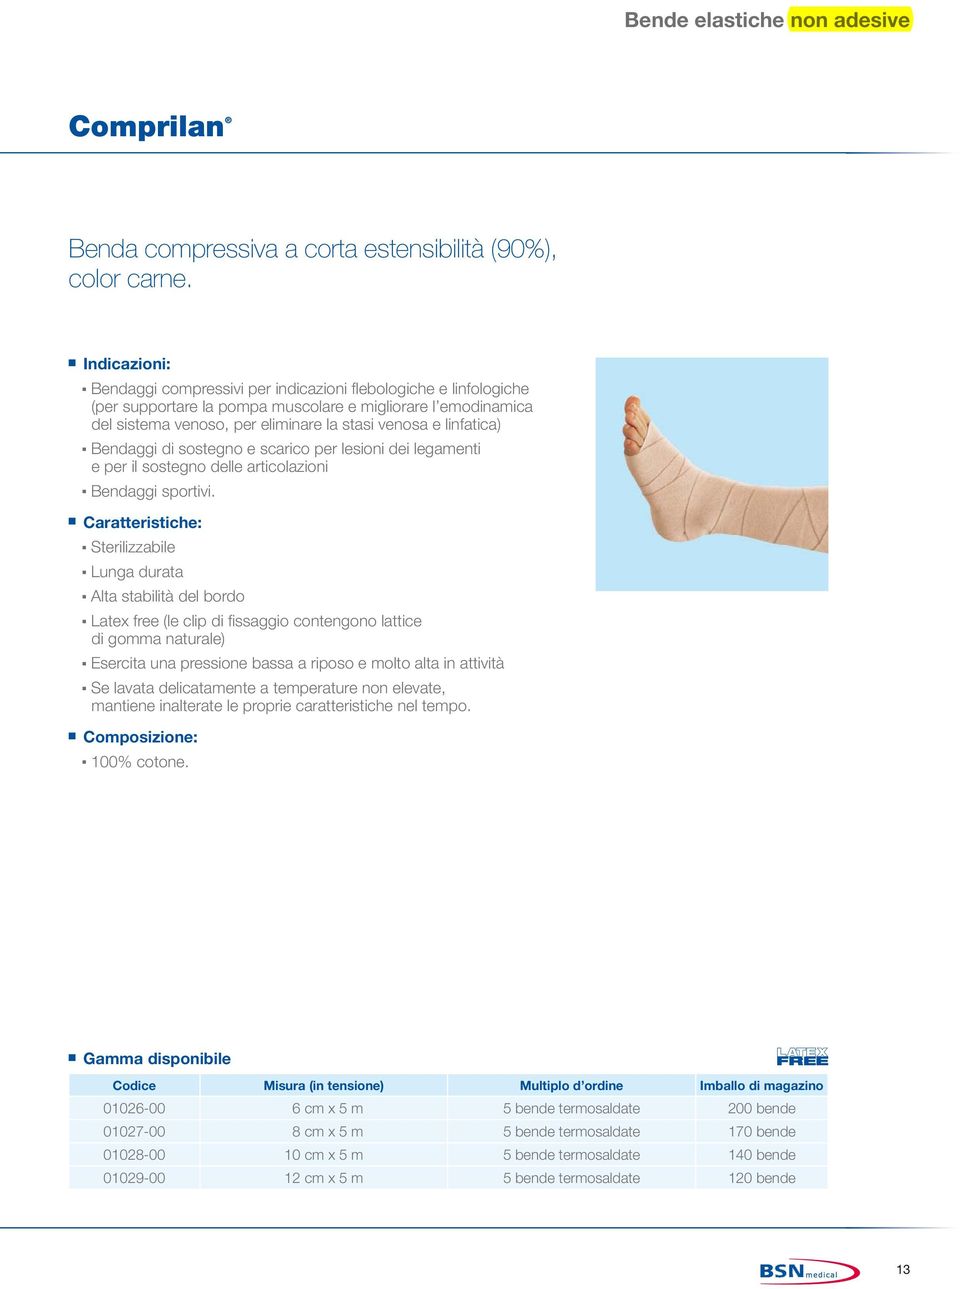 linfatica) Bendaggi di sostegno e scarico per lesioni dei legamenti e per il sostegno delle articolazioni Bendaggi sportivi.